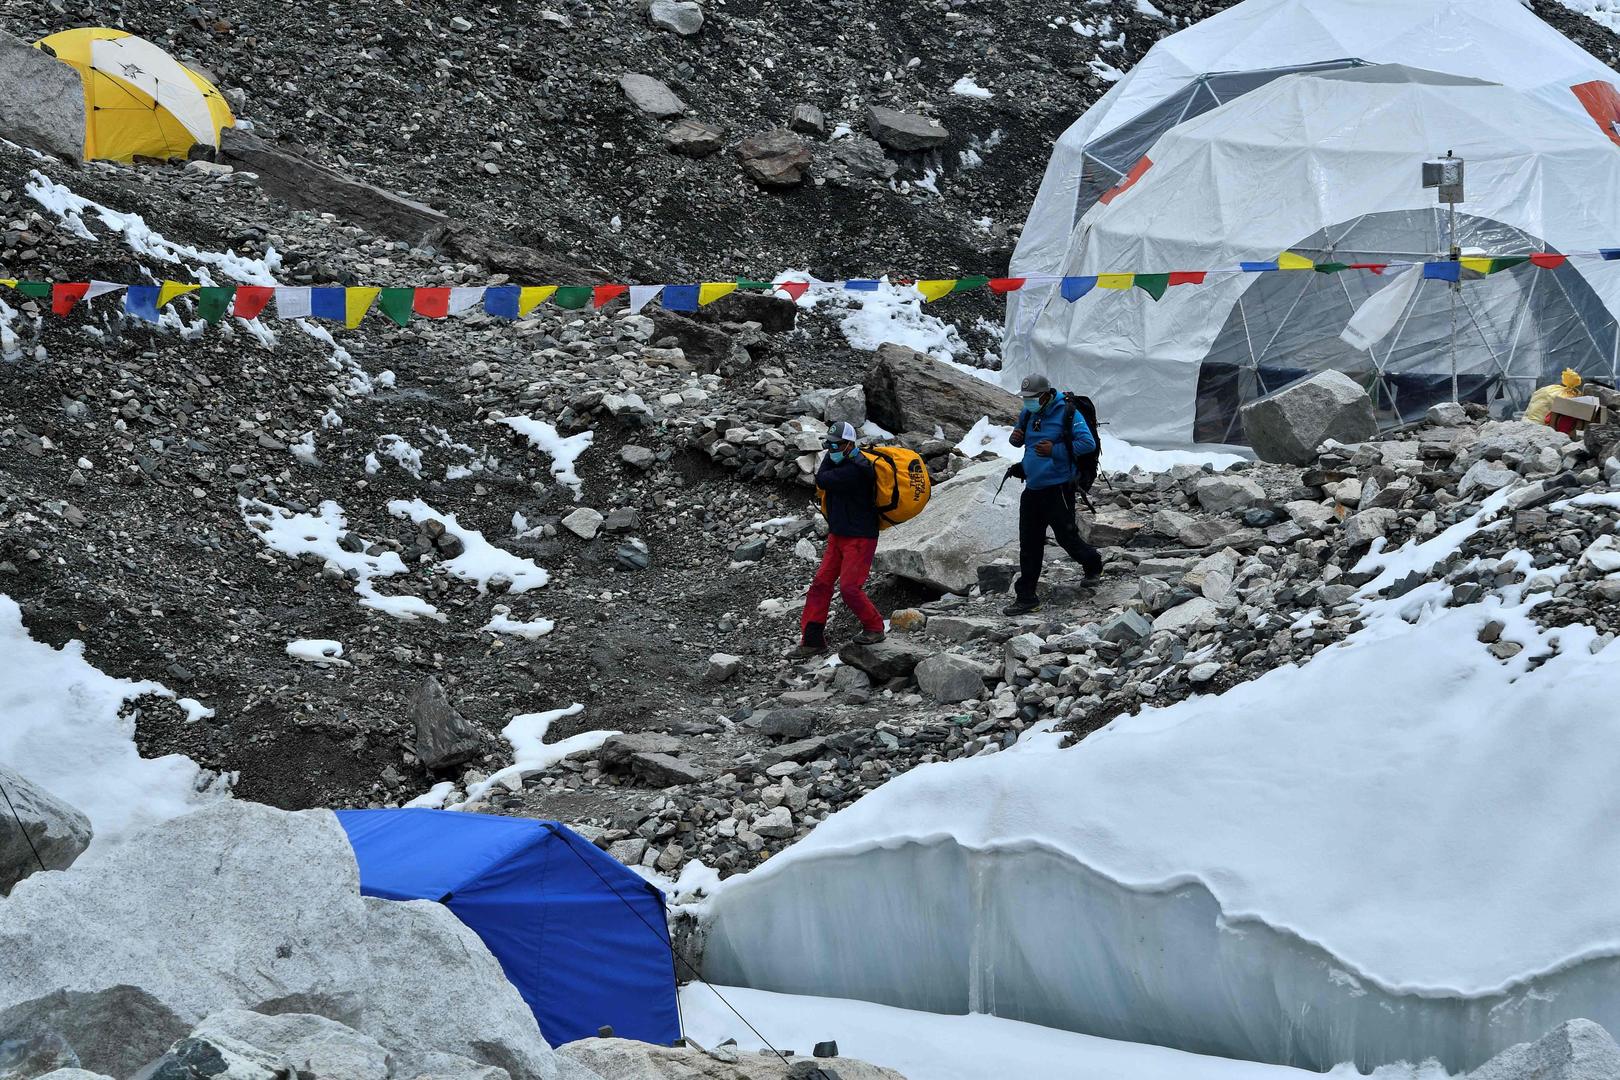 ↑尼泊尔珠穆朗玛峰大本营。图据视觉中国